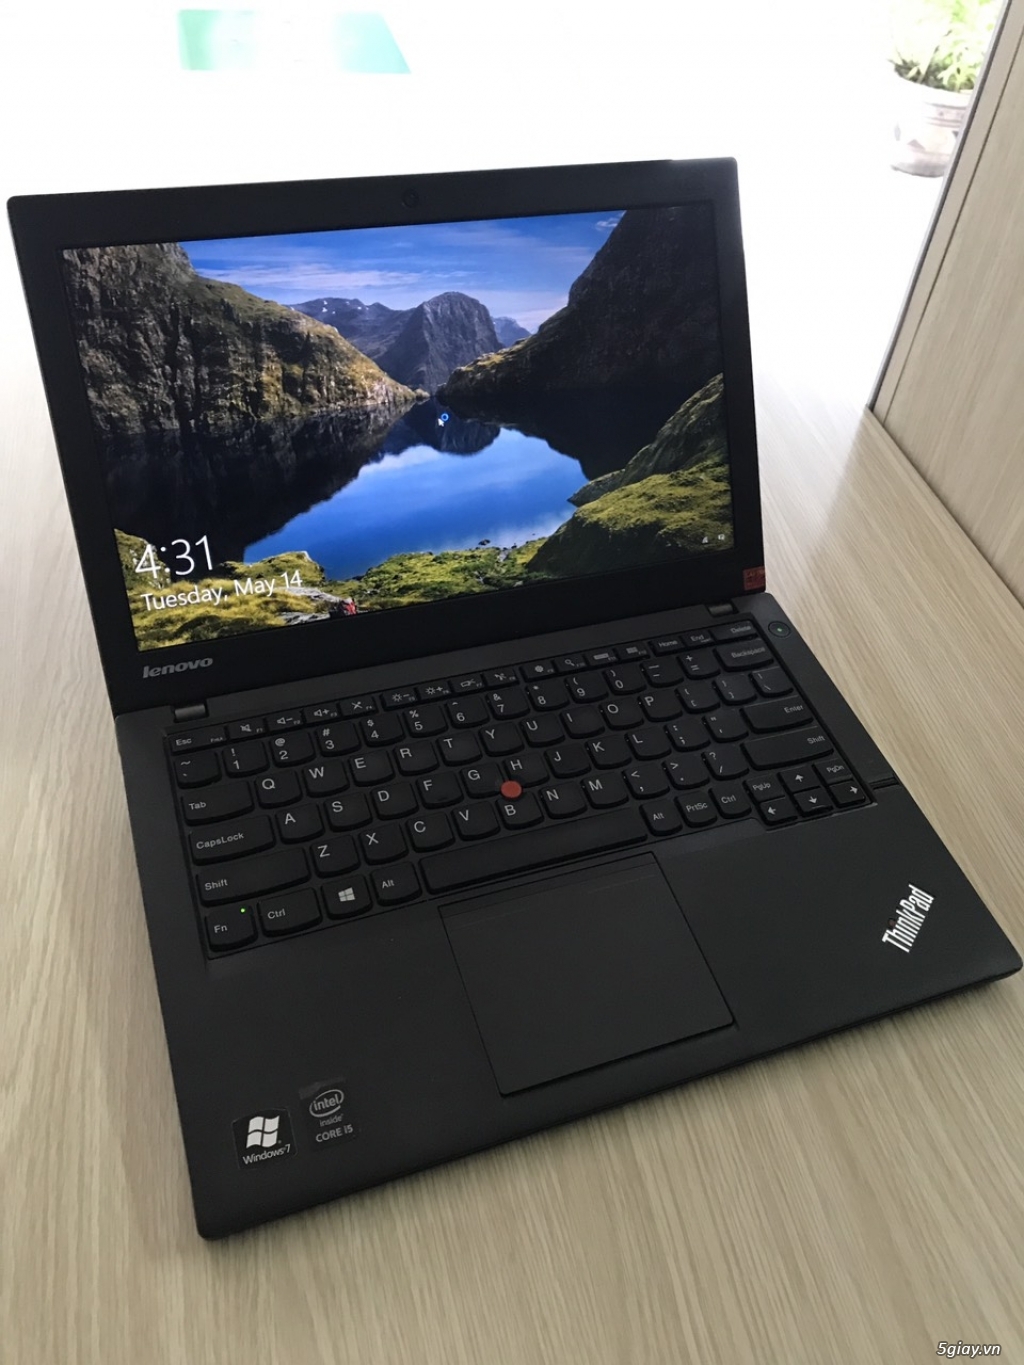 ThinkPad X240 core i5 4200 SSD 180G zin theo máy | 5giay